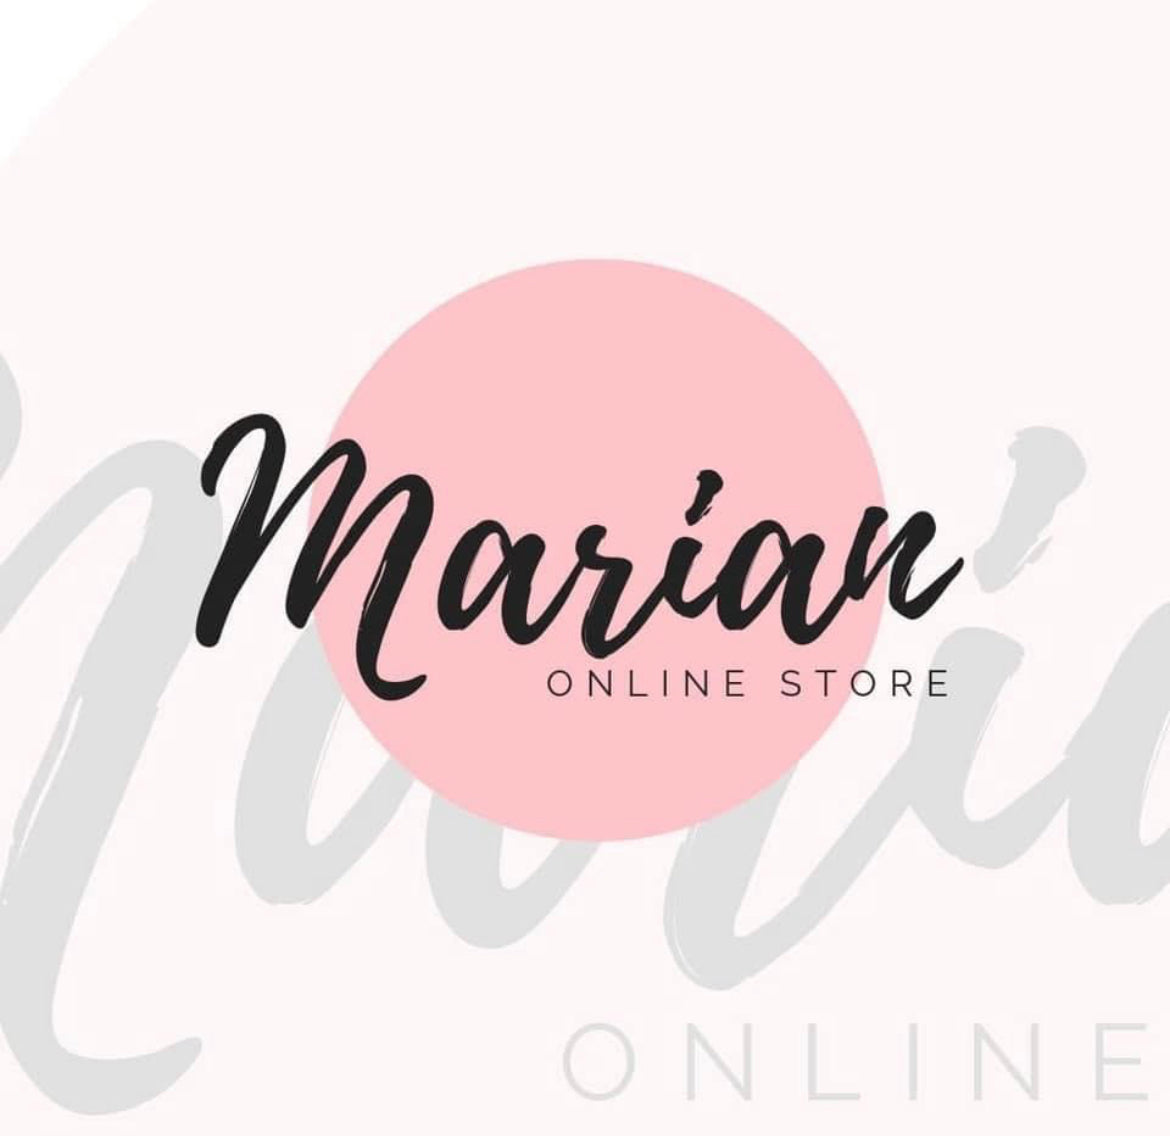 Marian fashion Online LLC